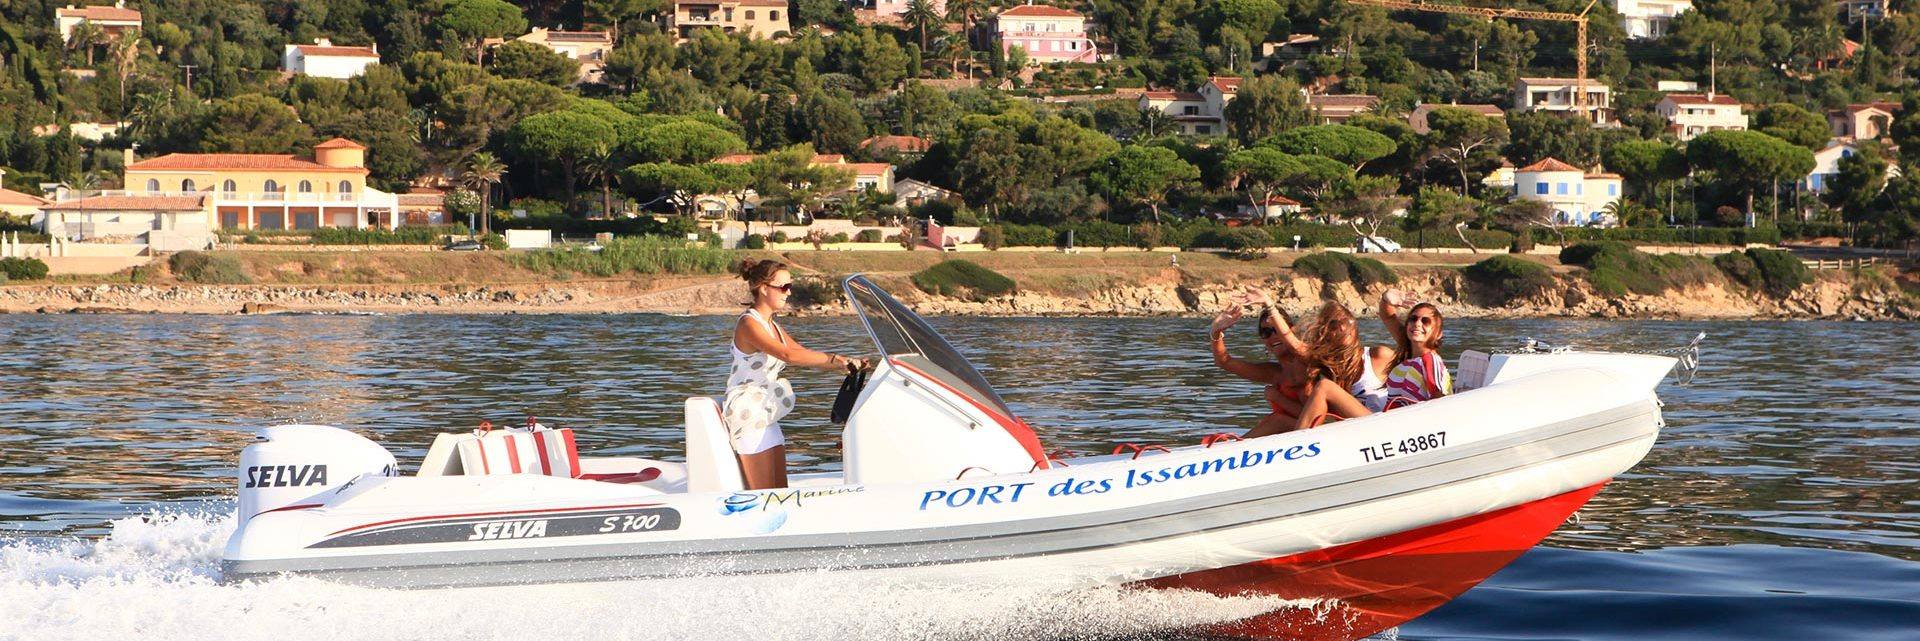 Boating in Issambres - Roquebrune sur Argens